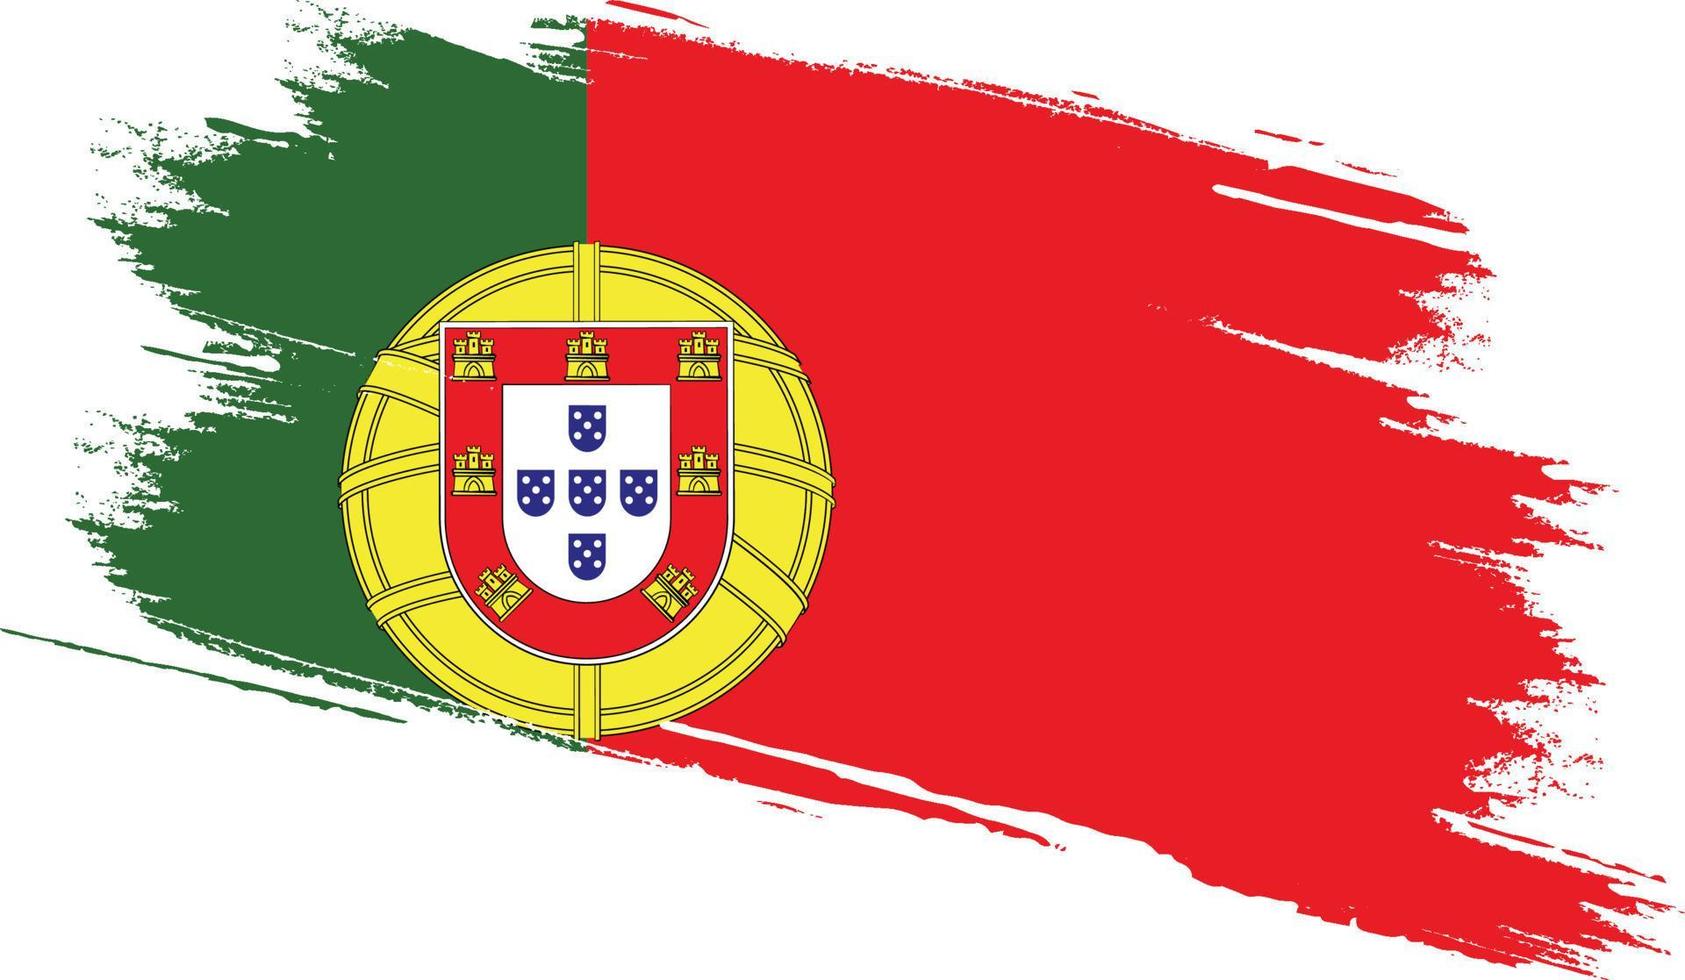 bandera de portugal con textura grunge vector